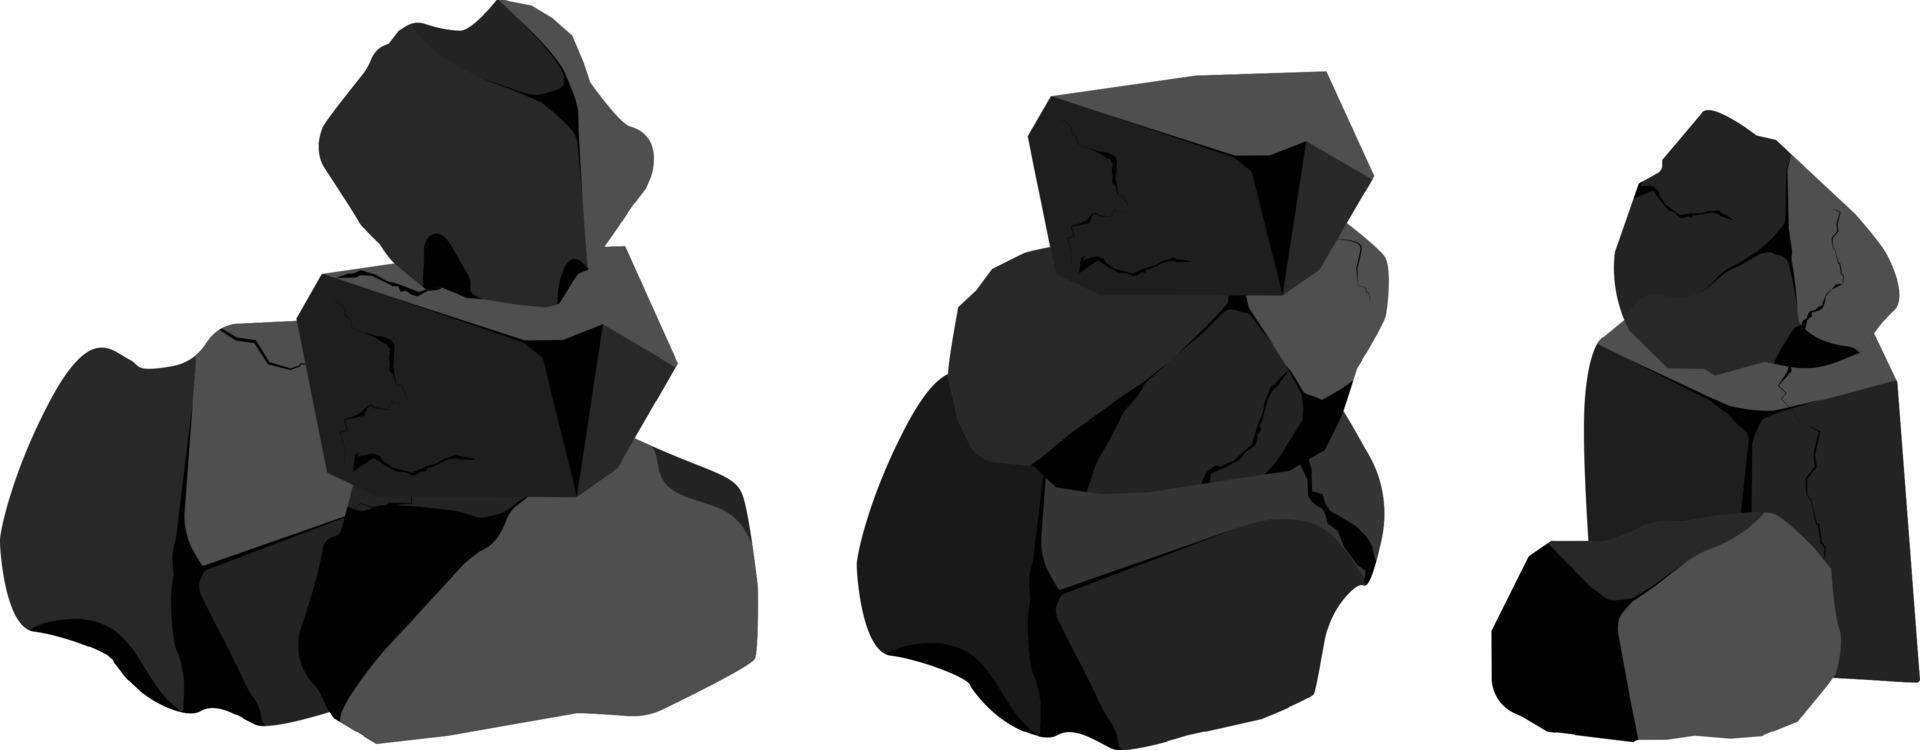 um conjunto de carvão preto de várias formas.colecção de peças de carvão, grafite, basalto e antracite. o conceito de mineração e minério em fragmentos mine.rock, pedregulhos e material de construção. vetor